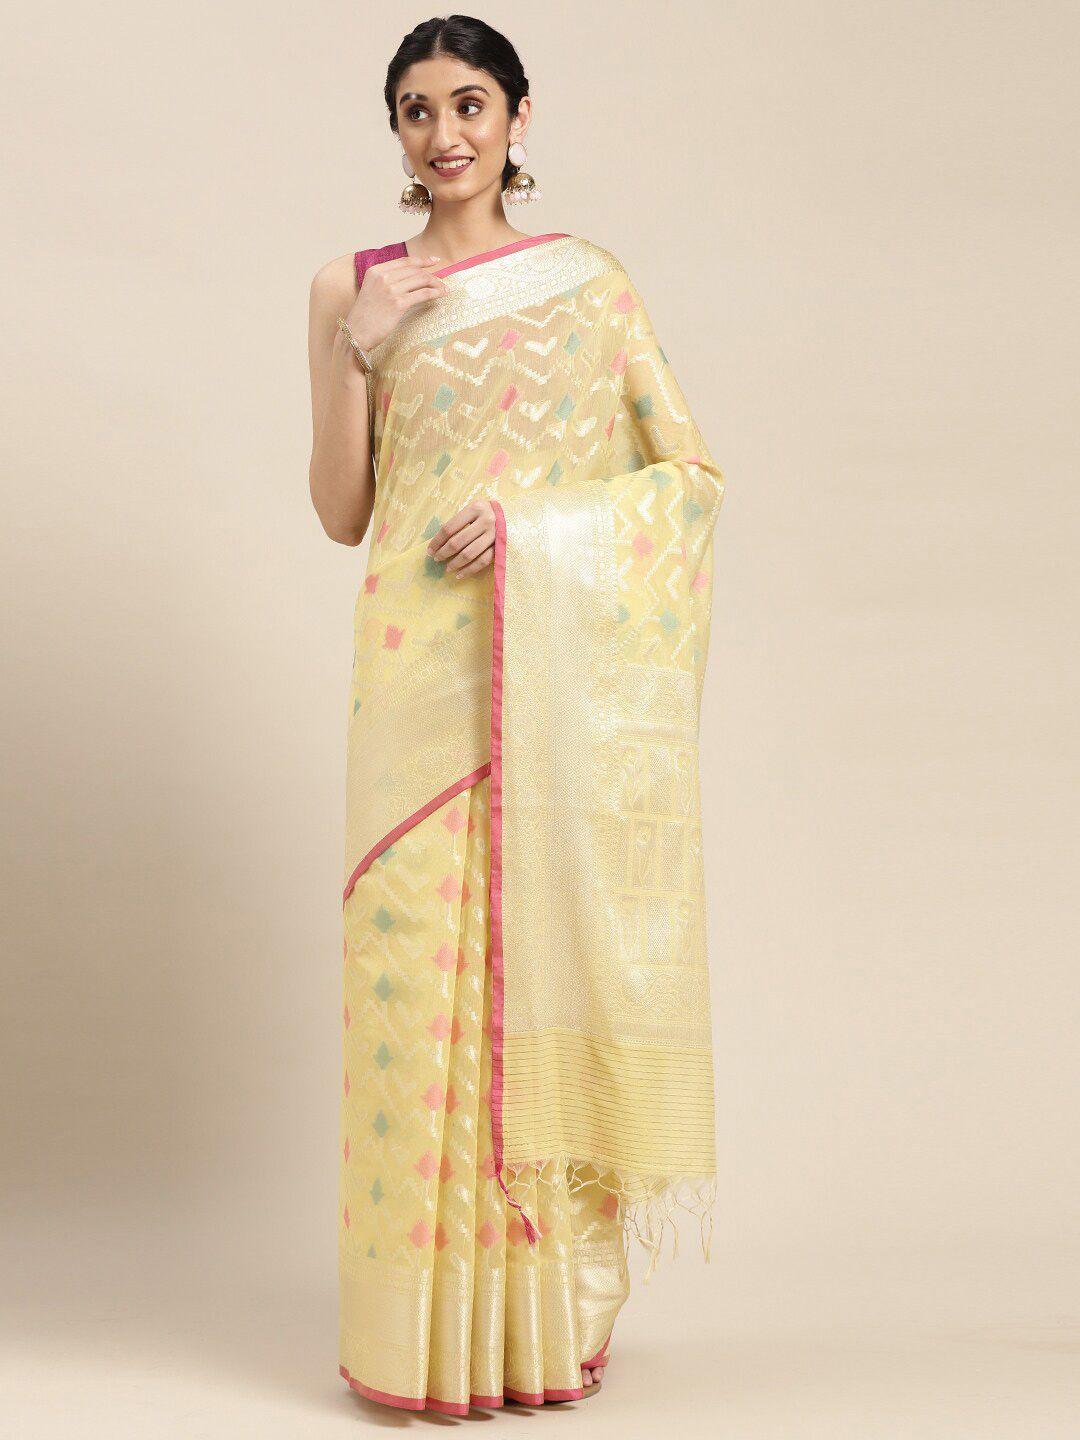 ptiepl banarasi silk works gold-toned & red floral zari banarasi saree